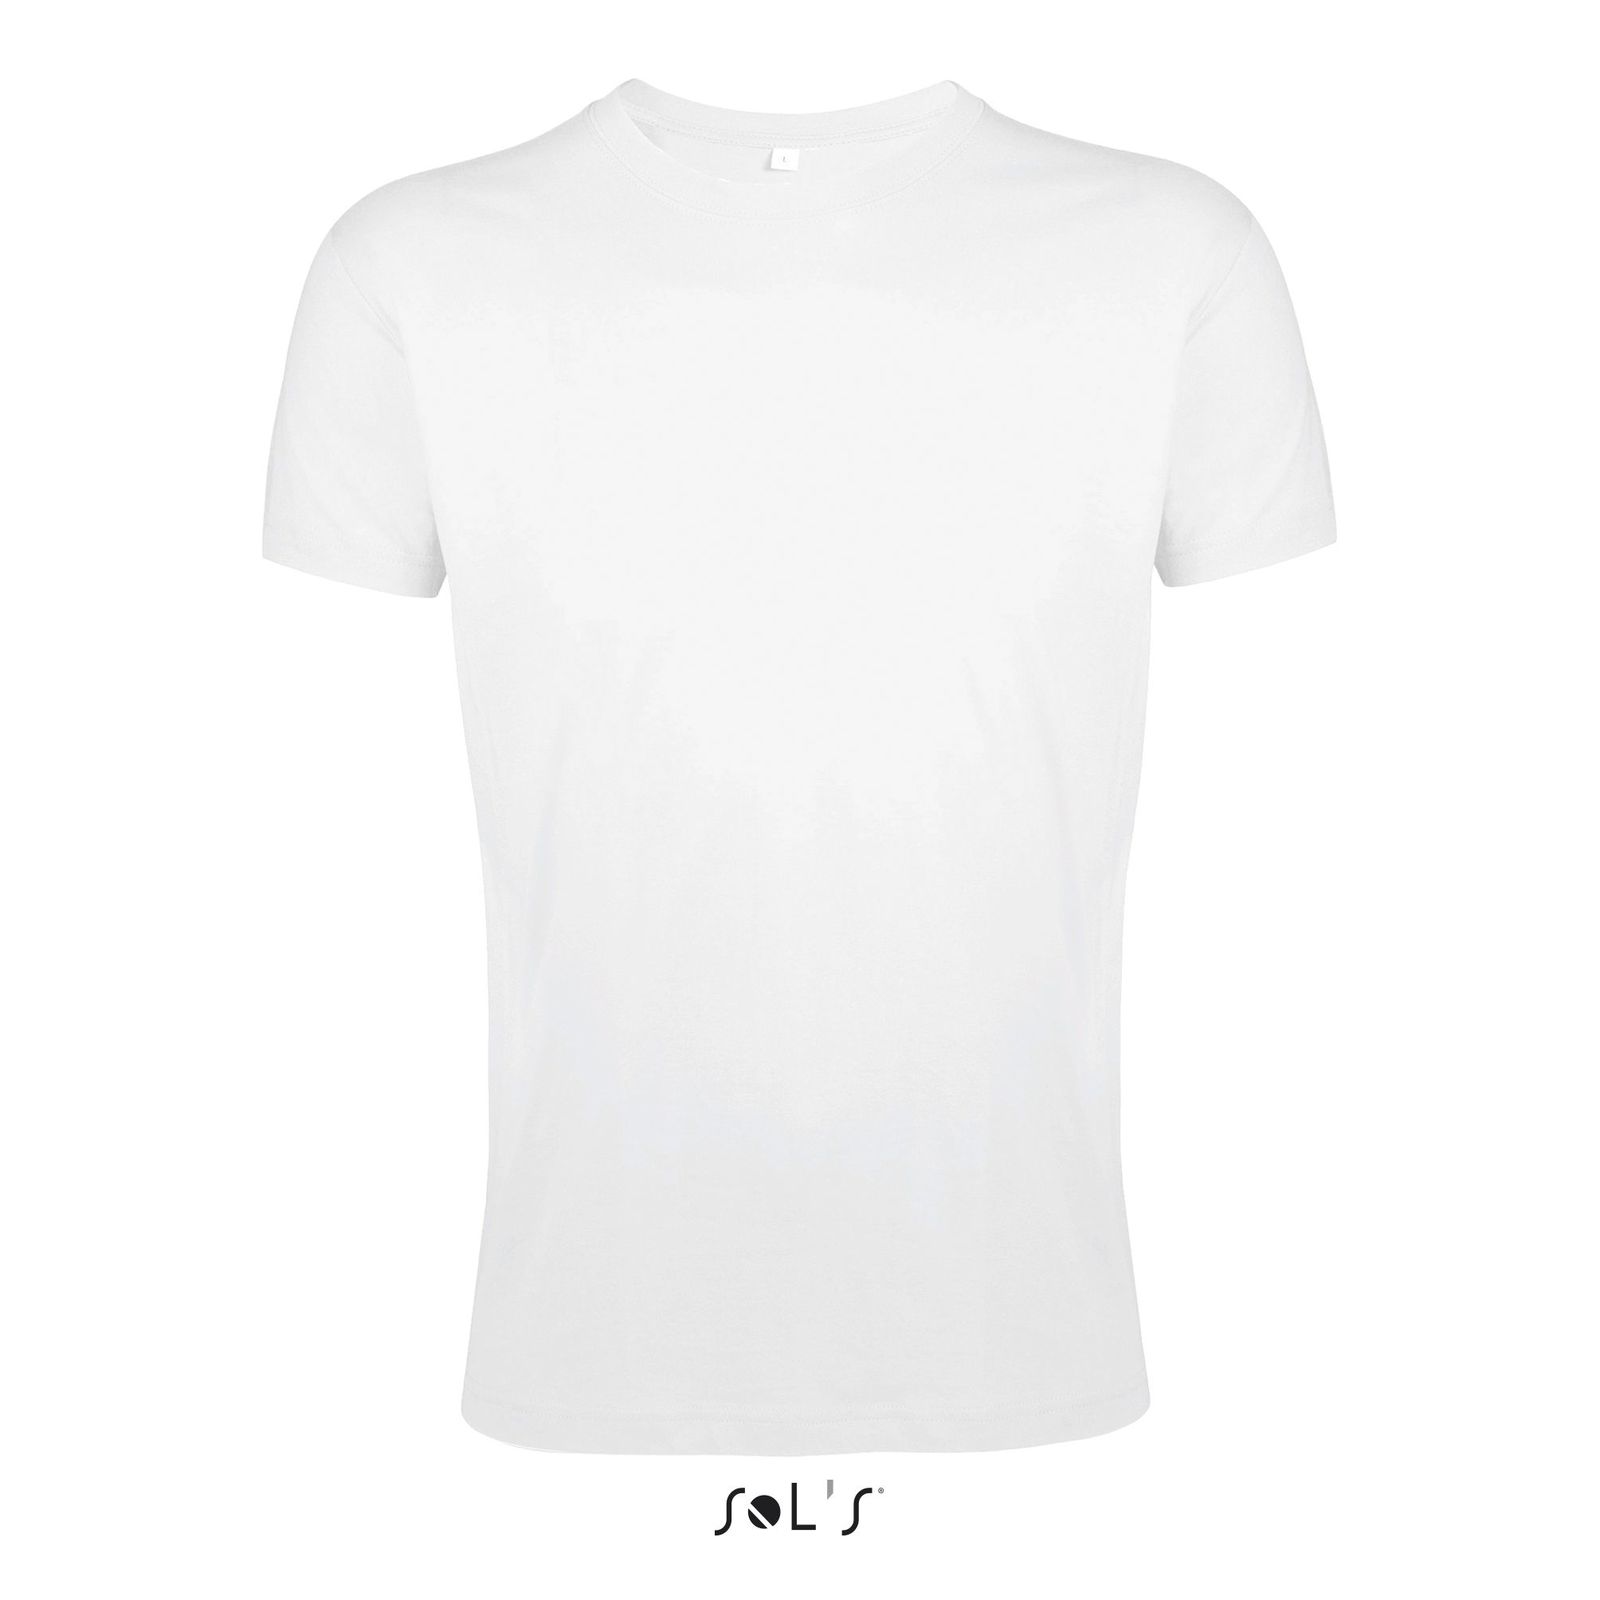 NAKEDSHIRT Femme Top T-shirt 100/% Coton Doux Col Large Premium basic femme